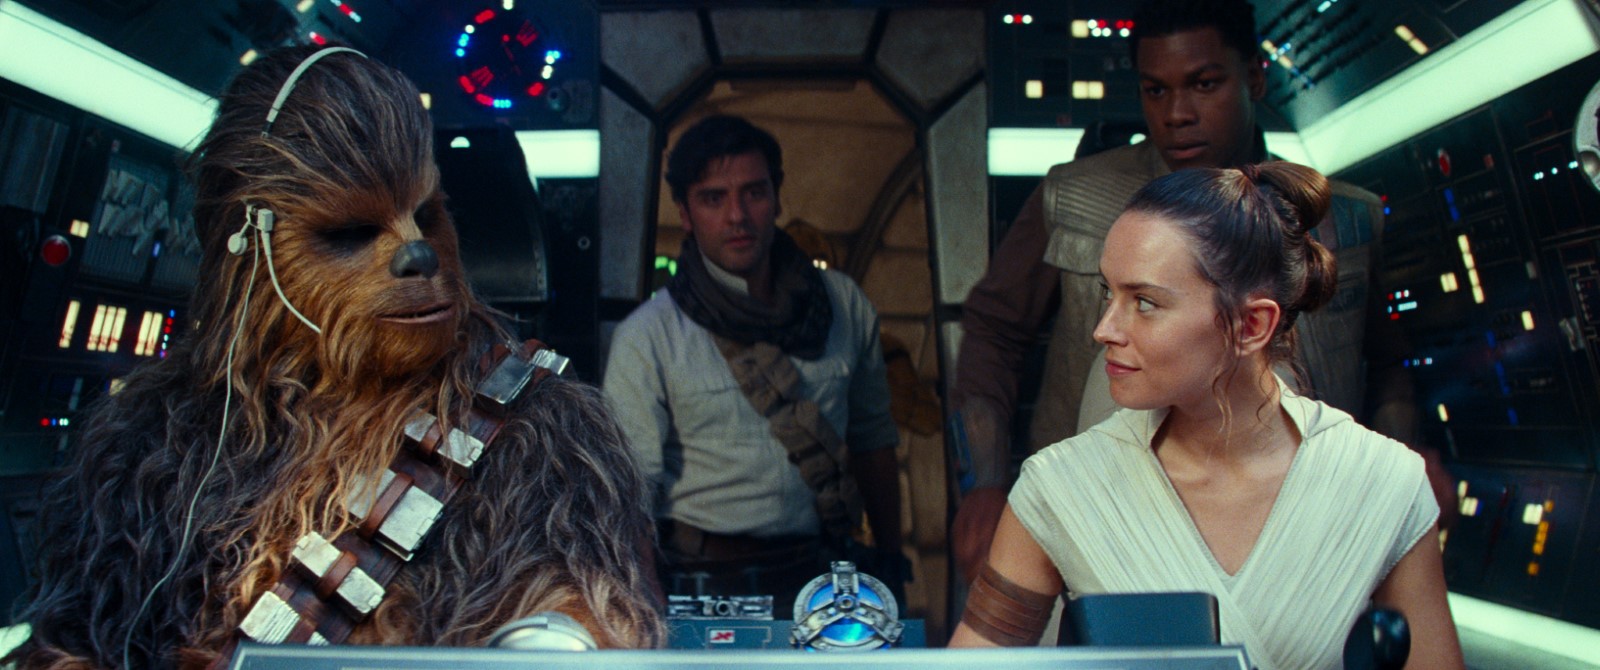 Critique Star Wars 9 : J. J. Abrams referme proprement la nouvelle trilogie